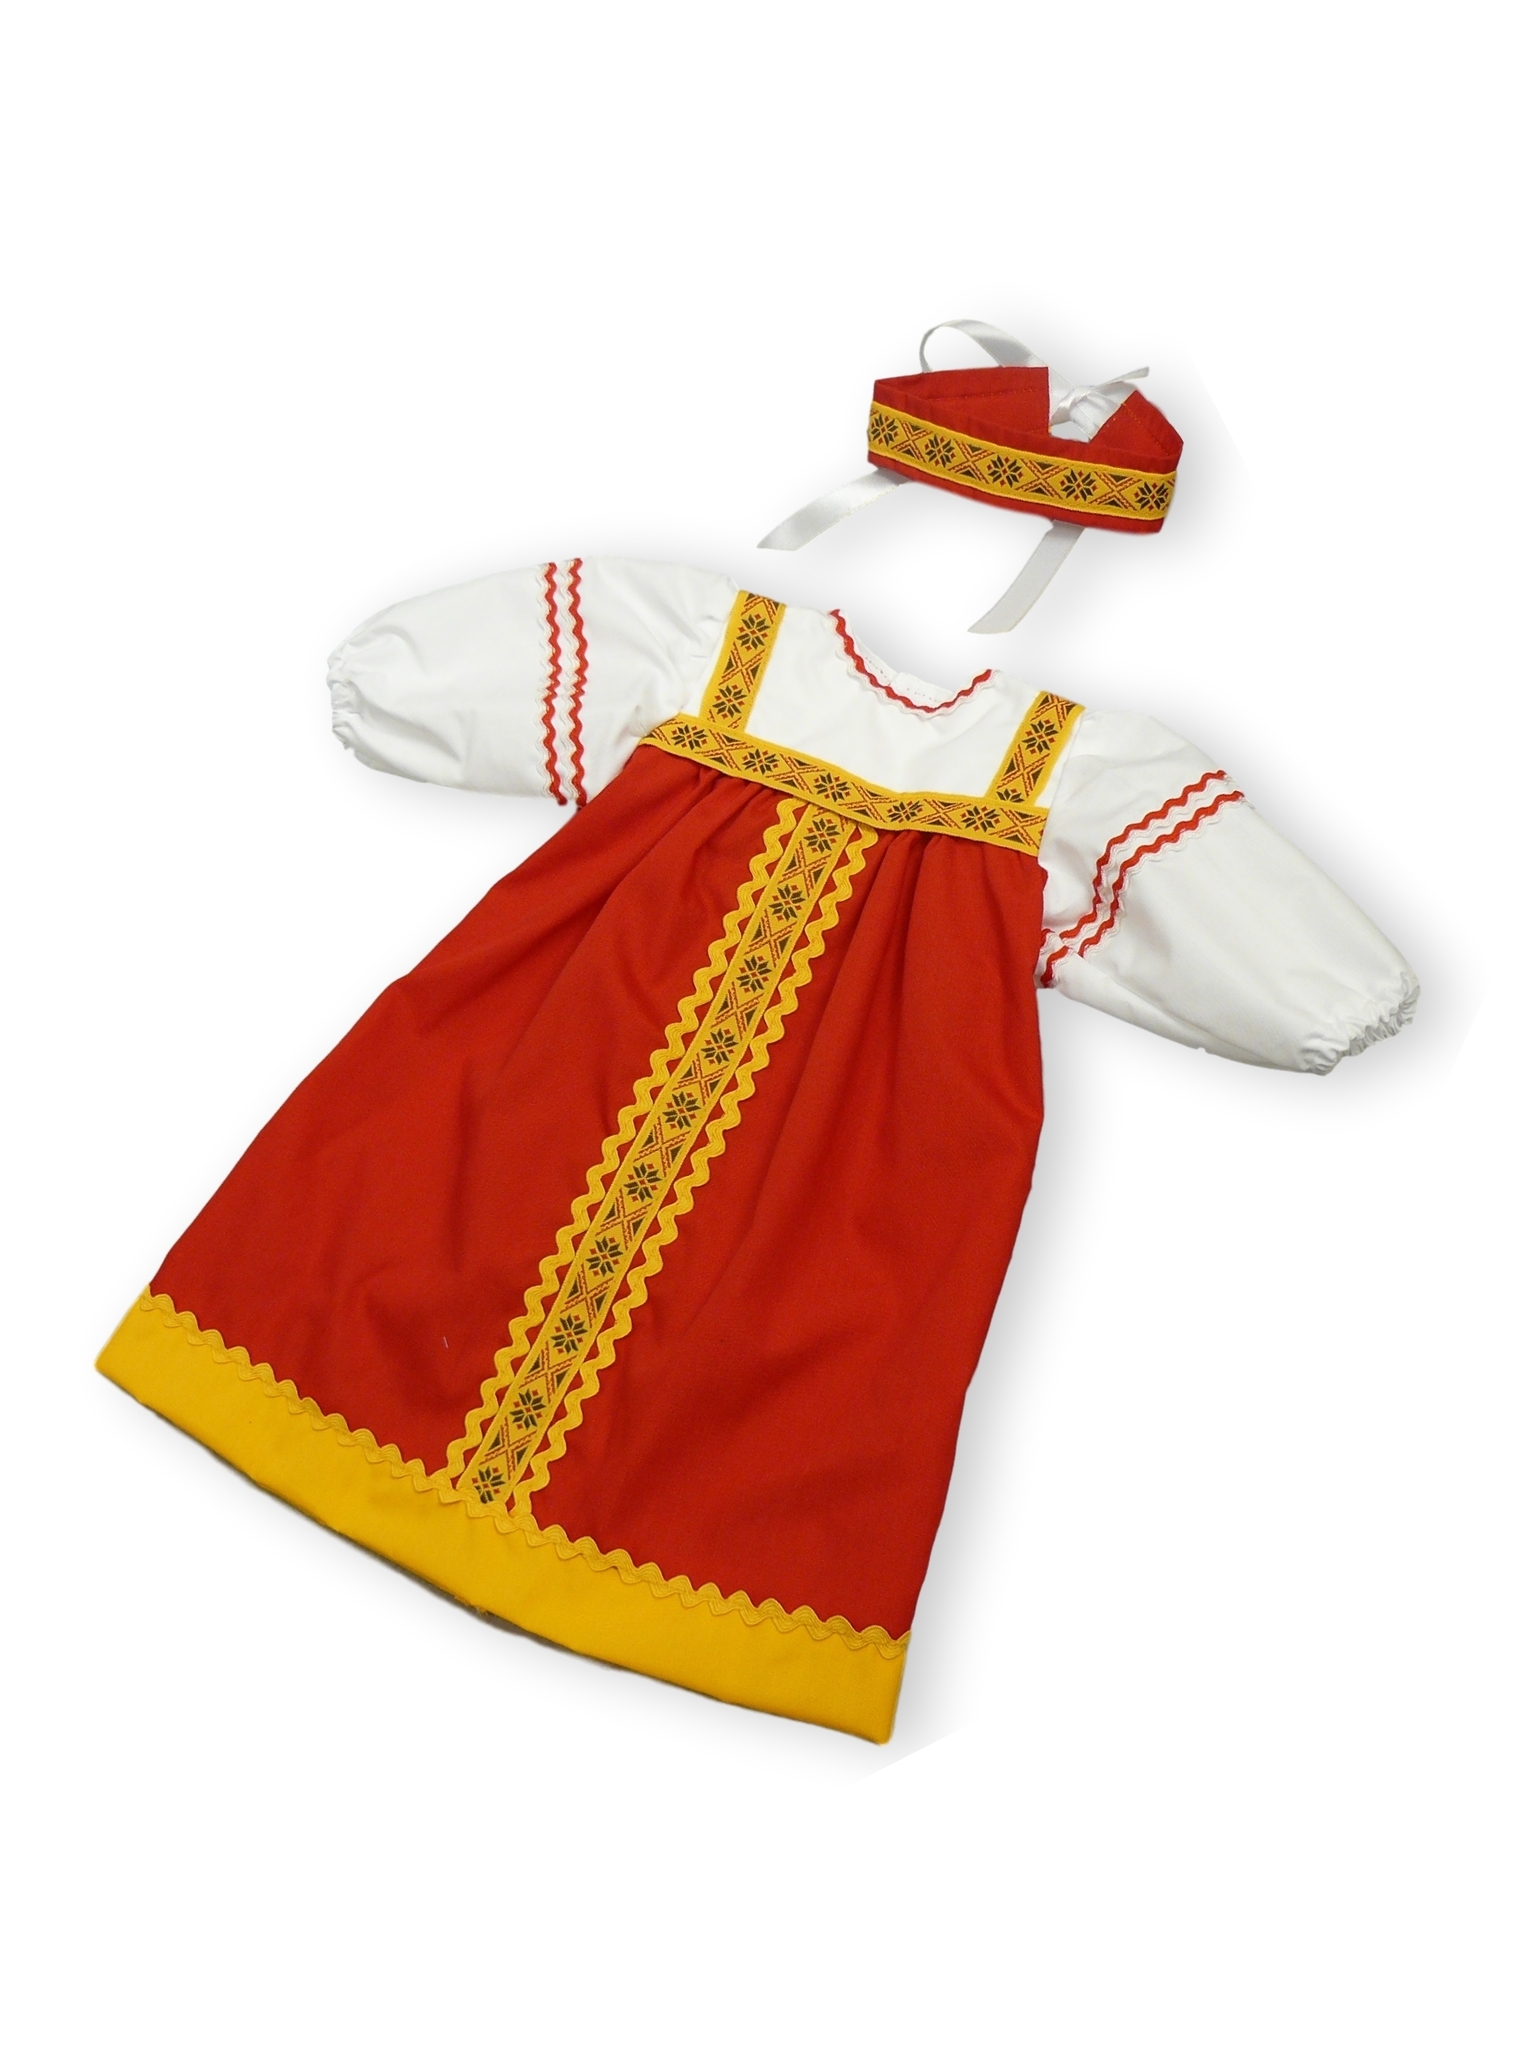 Кукла Этно в русском костюме, 30 см ВЕСНА купить в интернет-магазине Wildberries